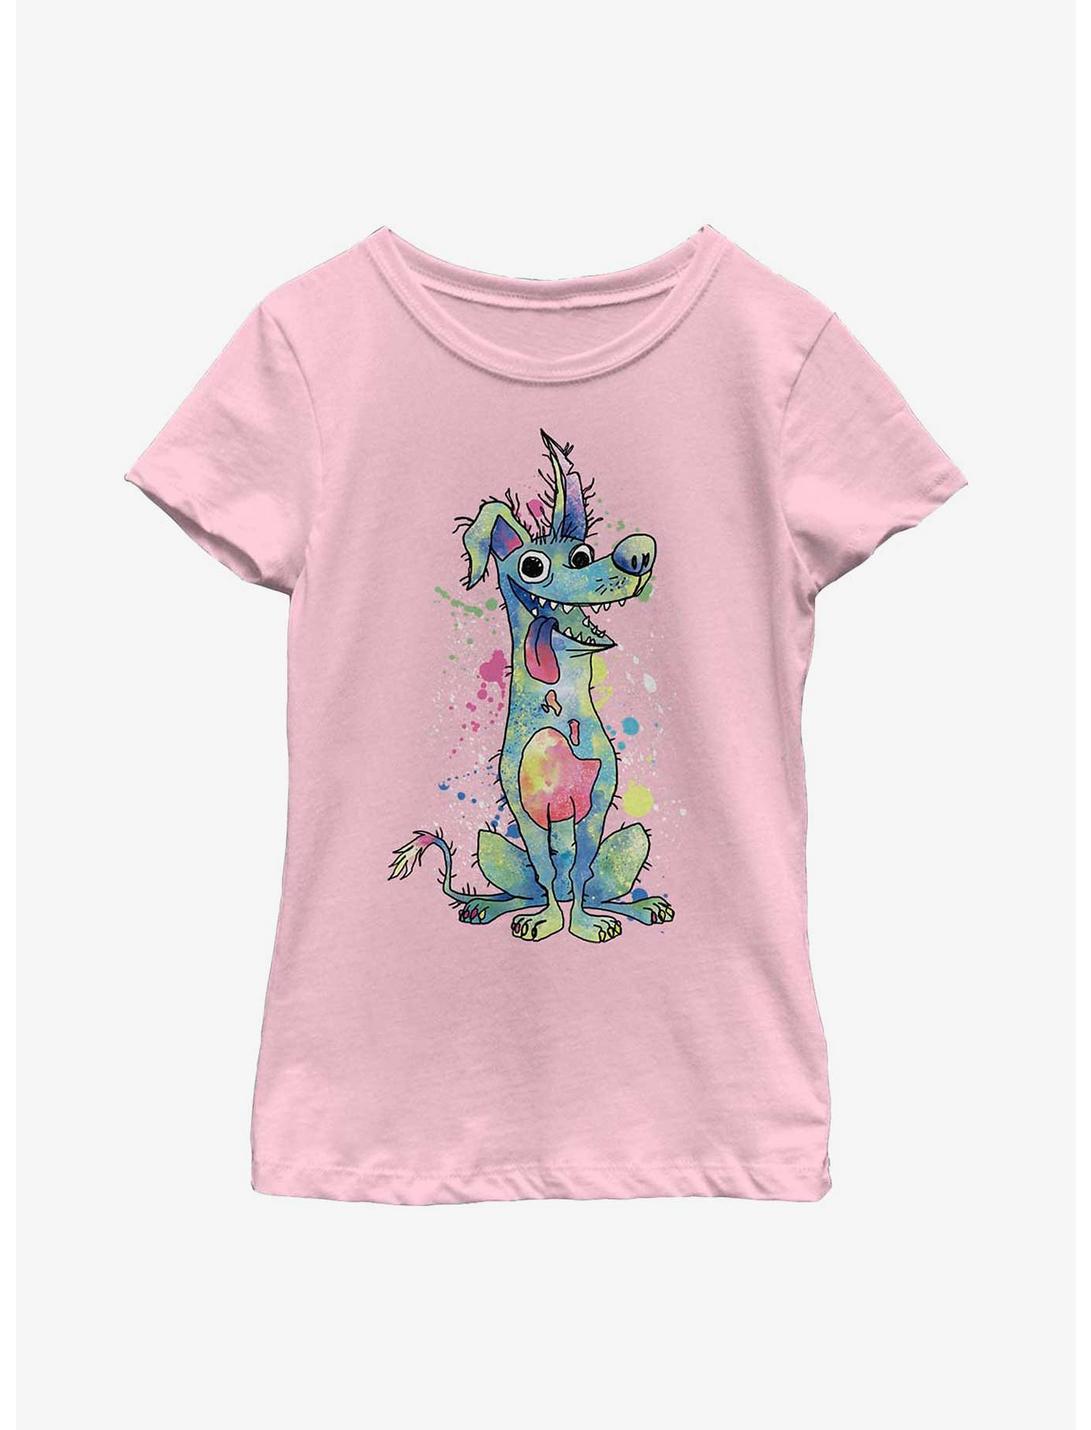 Disney Pixar Coco Watercolor Dante Youth Girls T-Shirt, PINK, hi-res